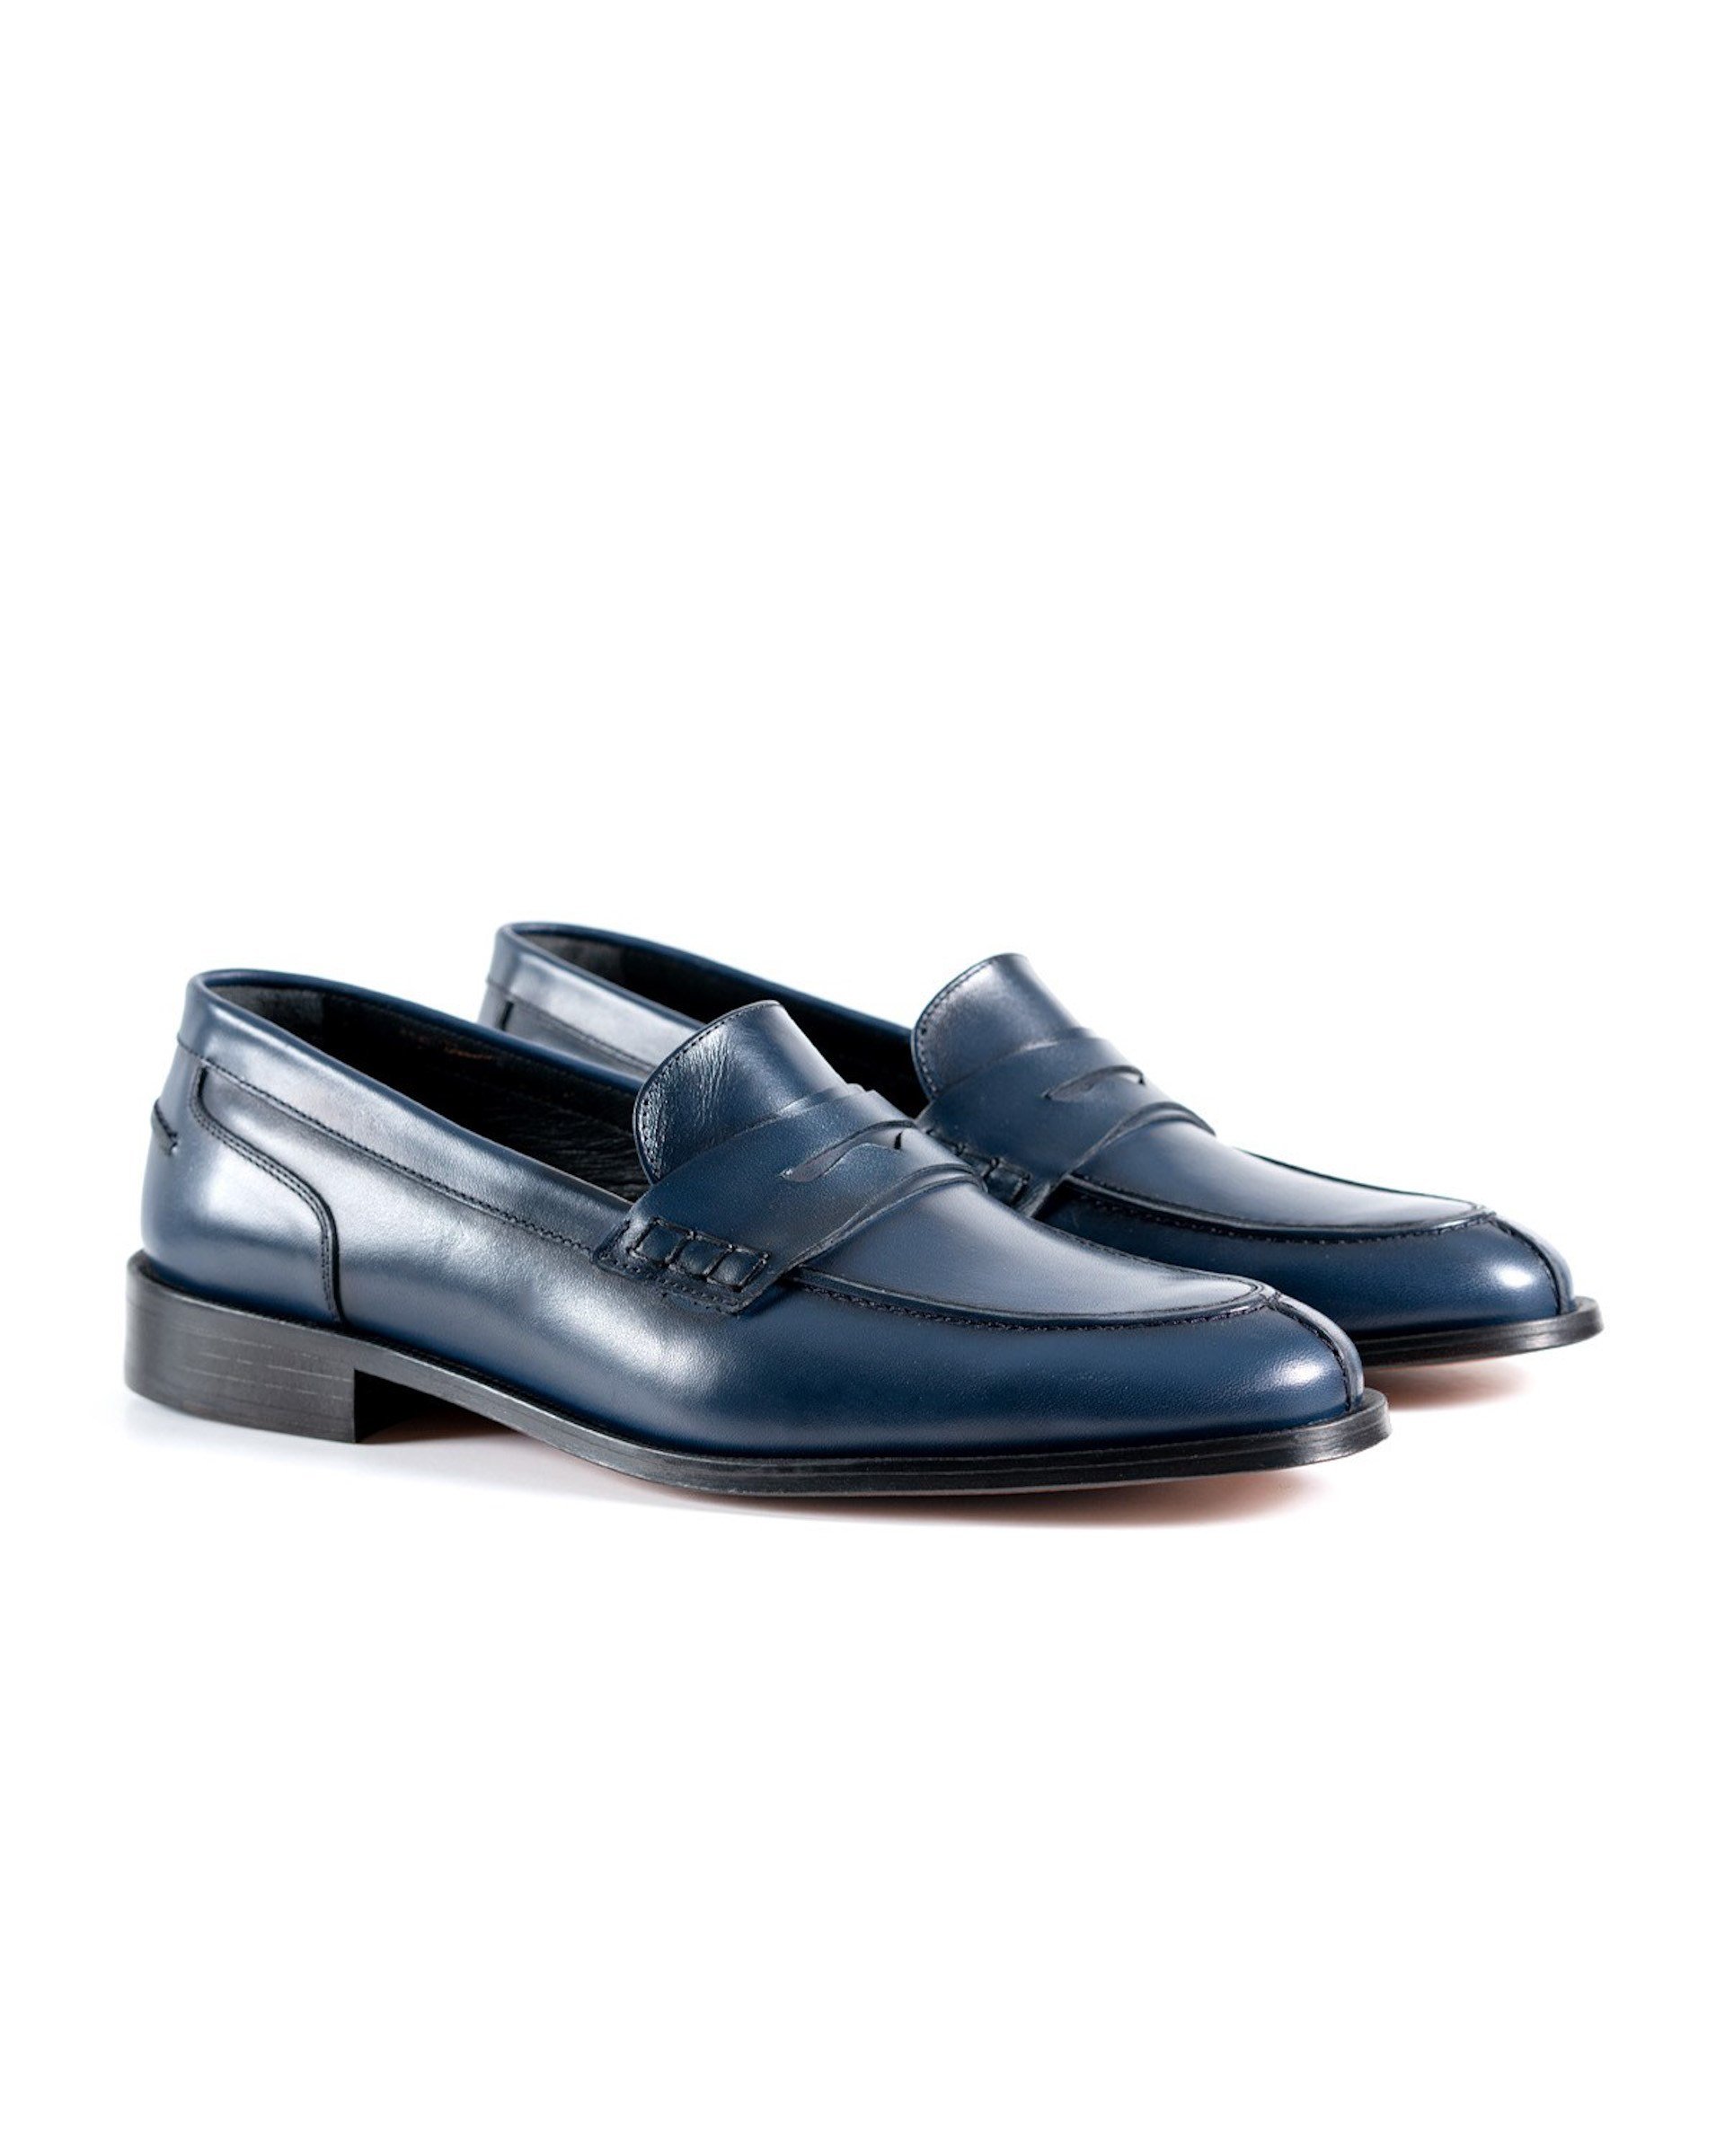 Allaturca Mavi Hakiki Deri Klasik Erkek Ayakkabı | Tezcan